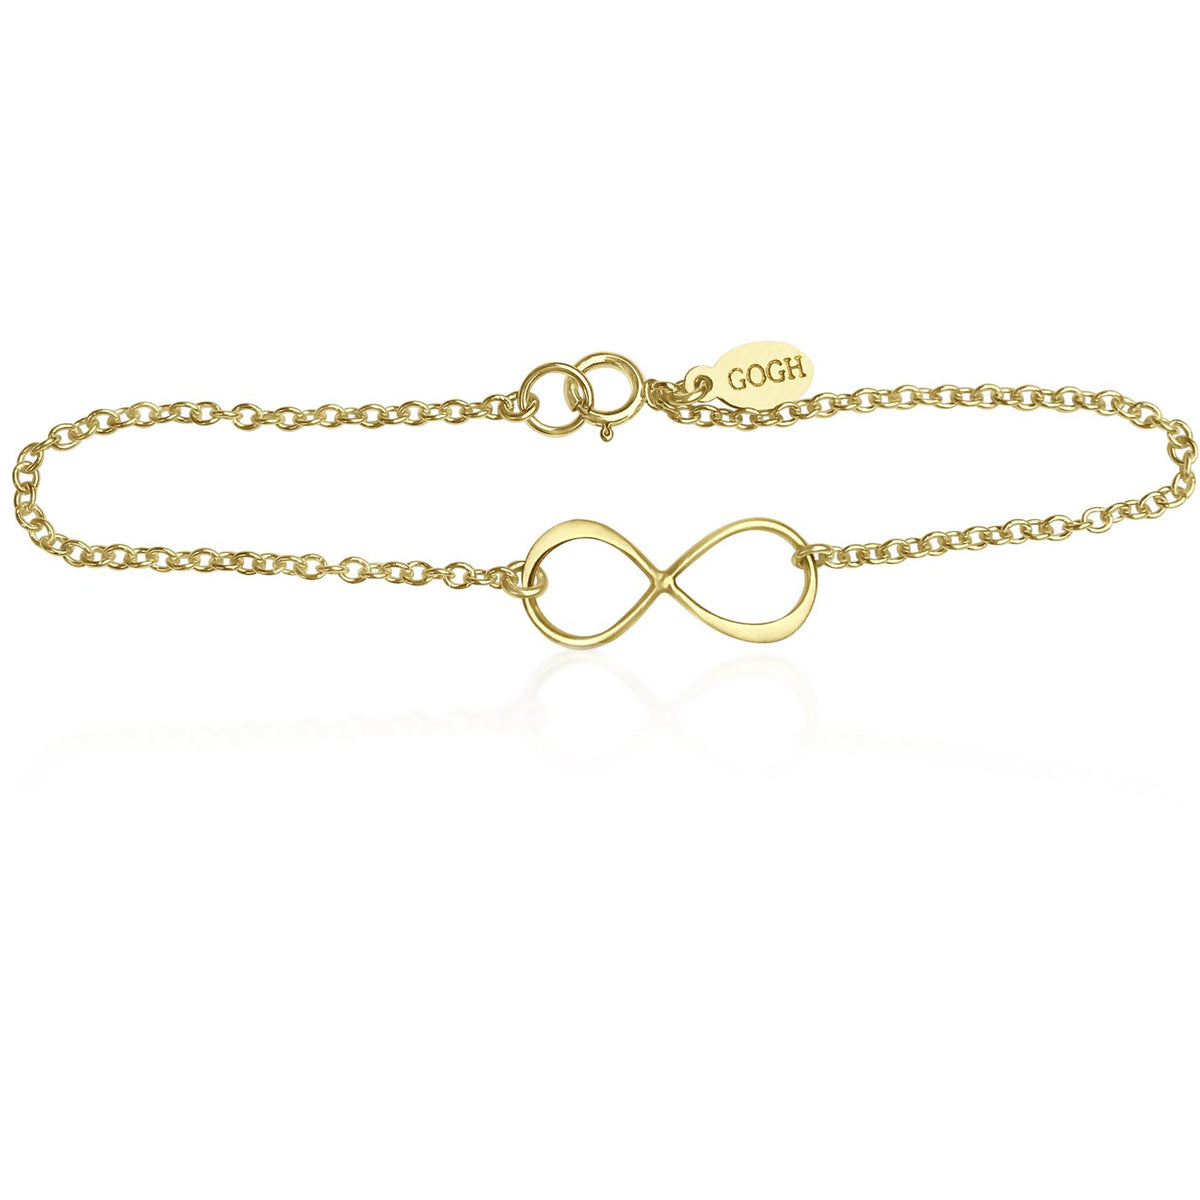 Infinity Gold Filled Bracelet for Everlasting Love